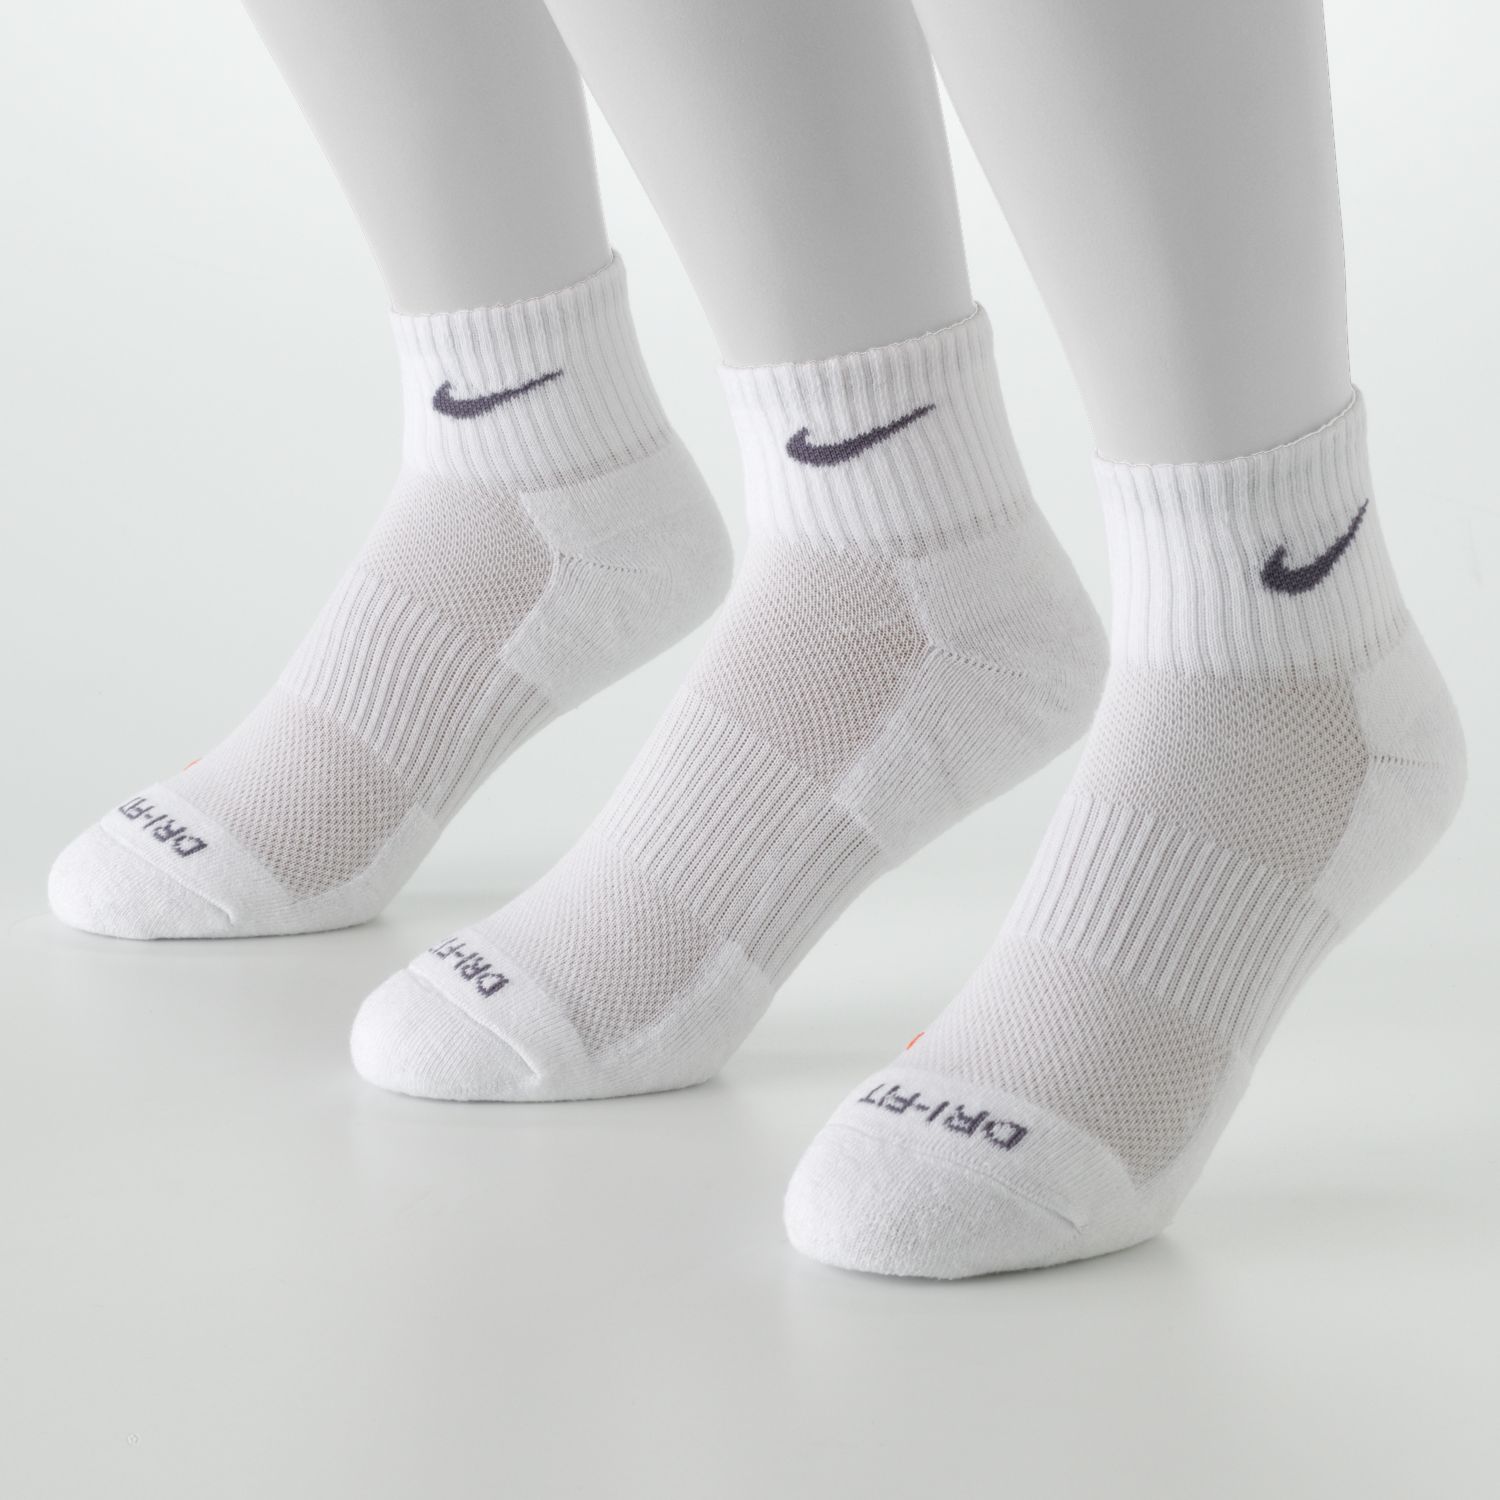 nike quarter socks on feet